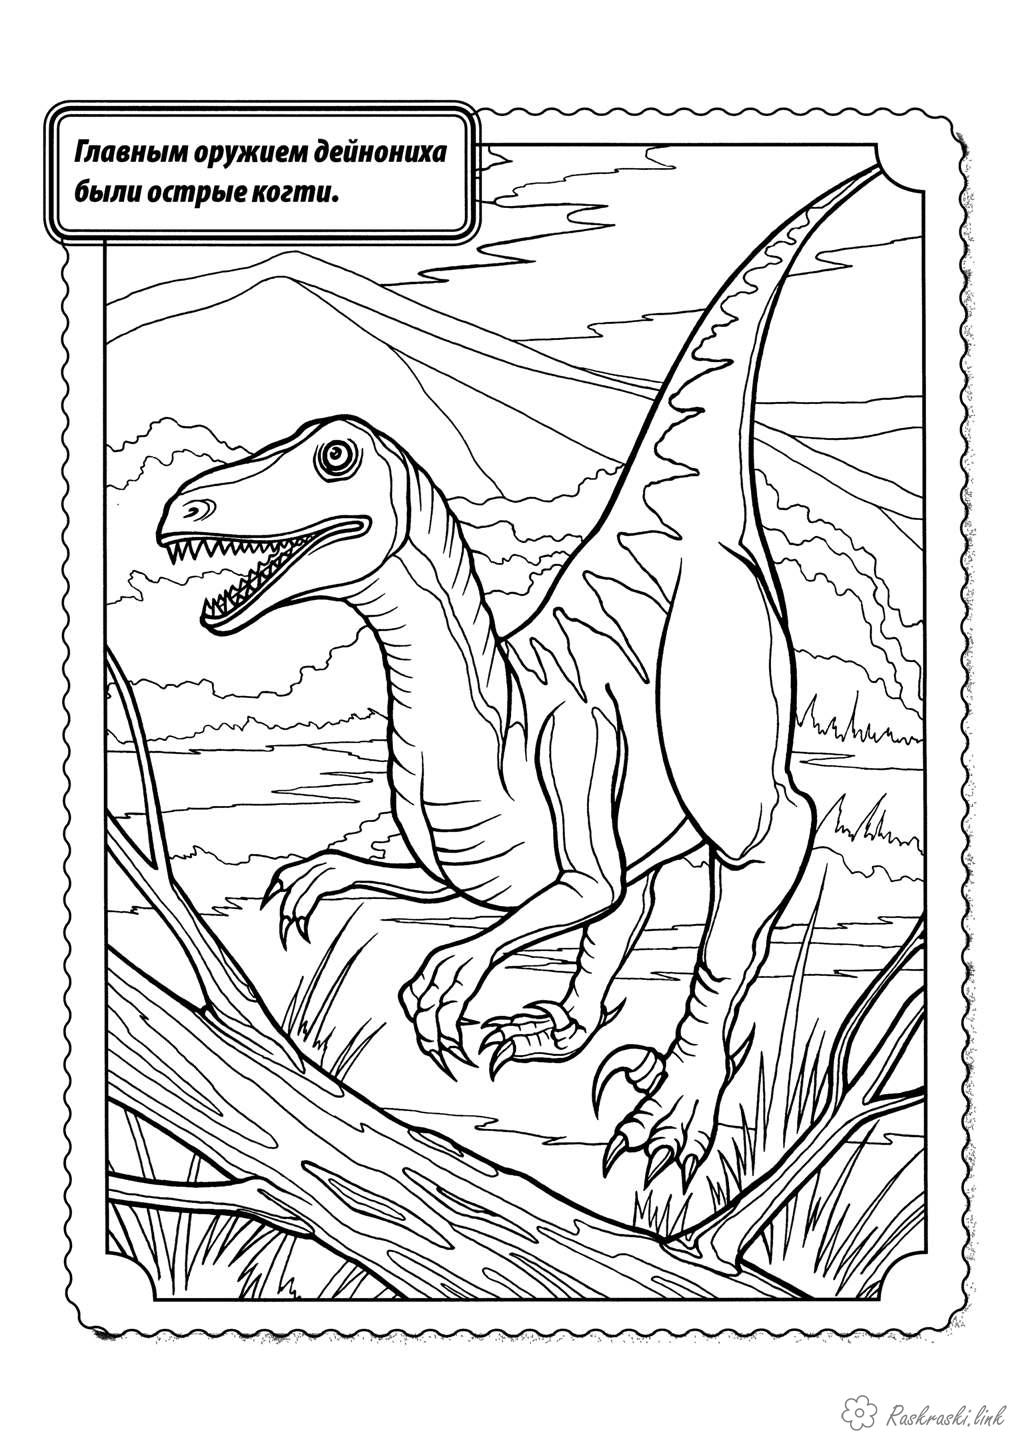 Розмальовки Рептилії Рептилії, динозавр, дейноніх, хижак, кігті